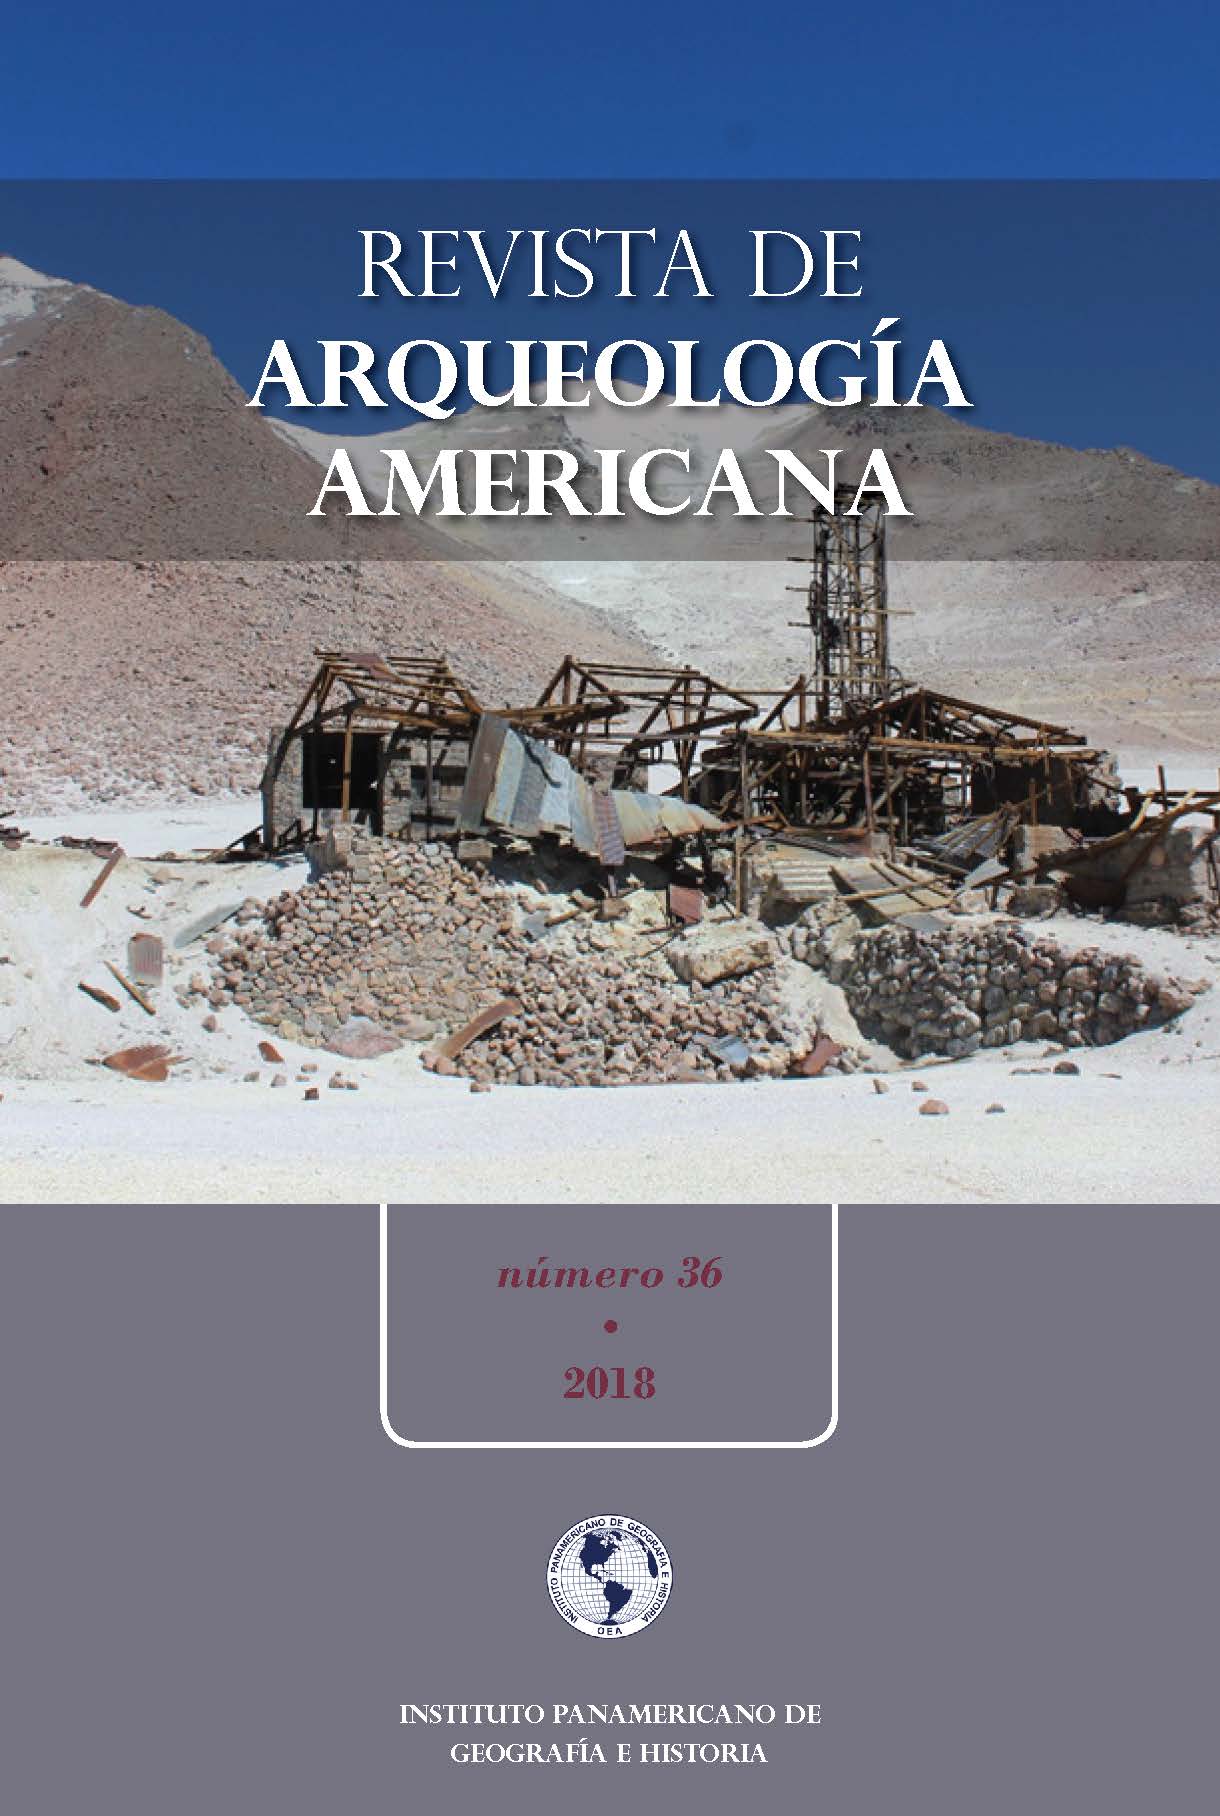 Arqueología y Patrimonio Industrial